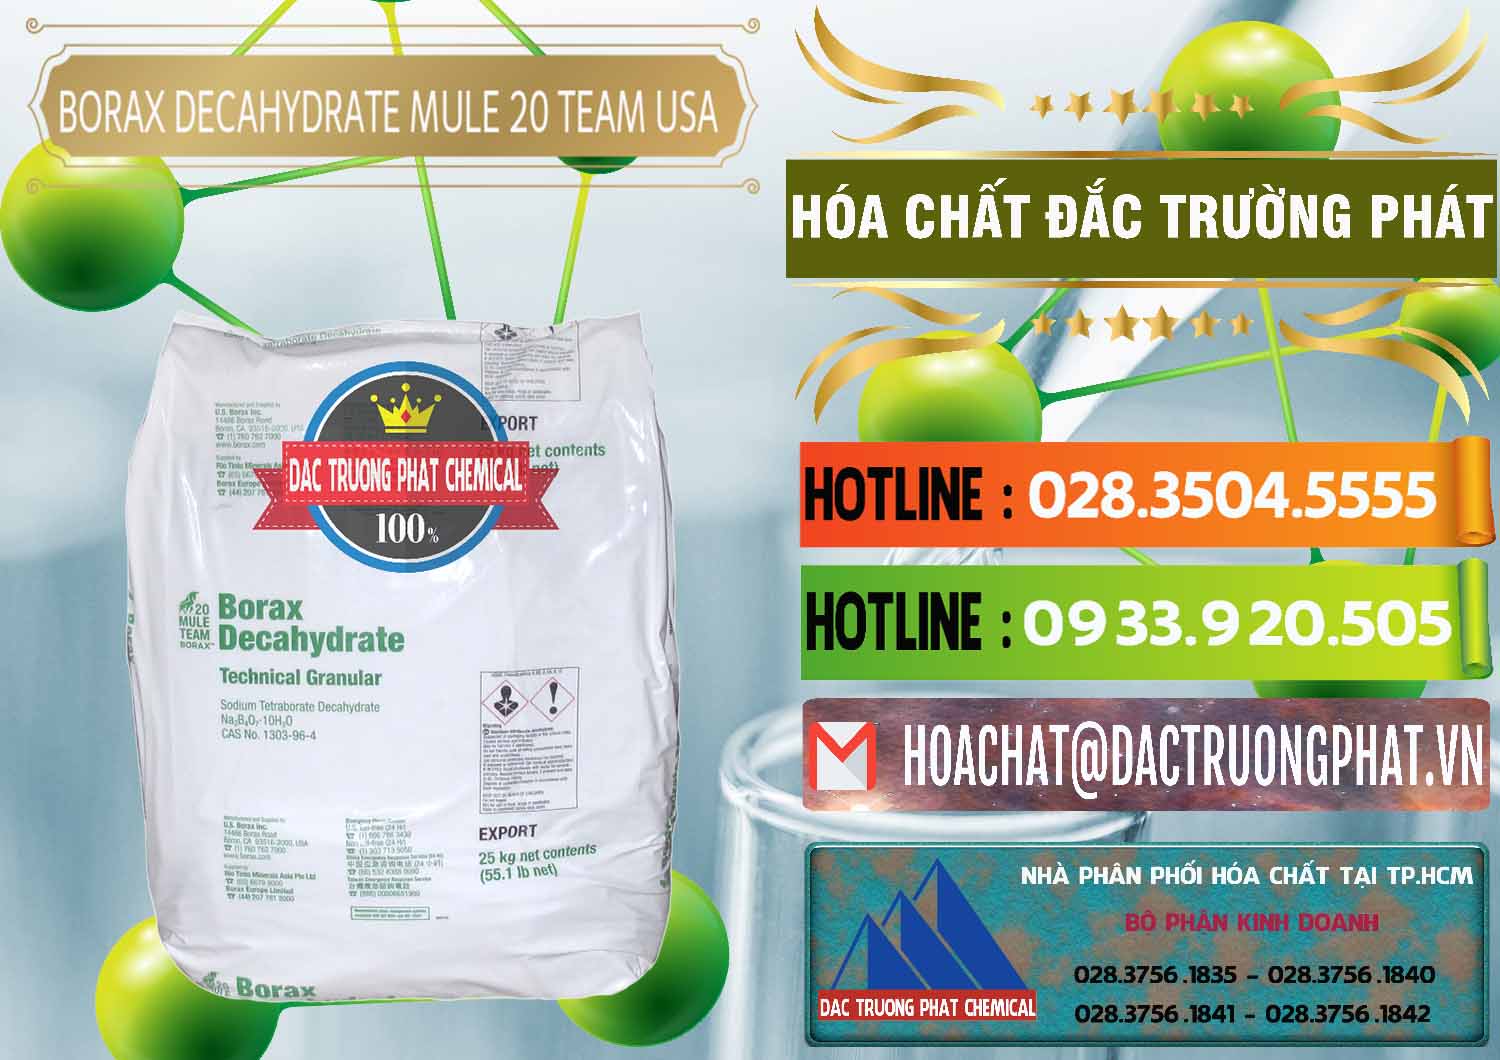 Nhà cung cấp & bán Borax Decahydrate - NA2B4O7.10H2O Mỹ USA Mule 20 Team - 0031 - Cty chuyên kinh doanh & phân phối hóa chất tại TP.HCM - cungcaphoachat.com.vn